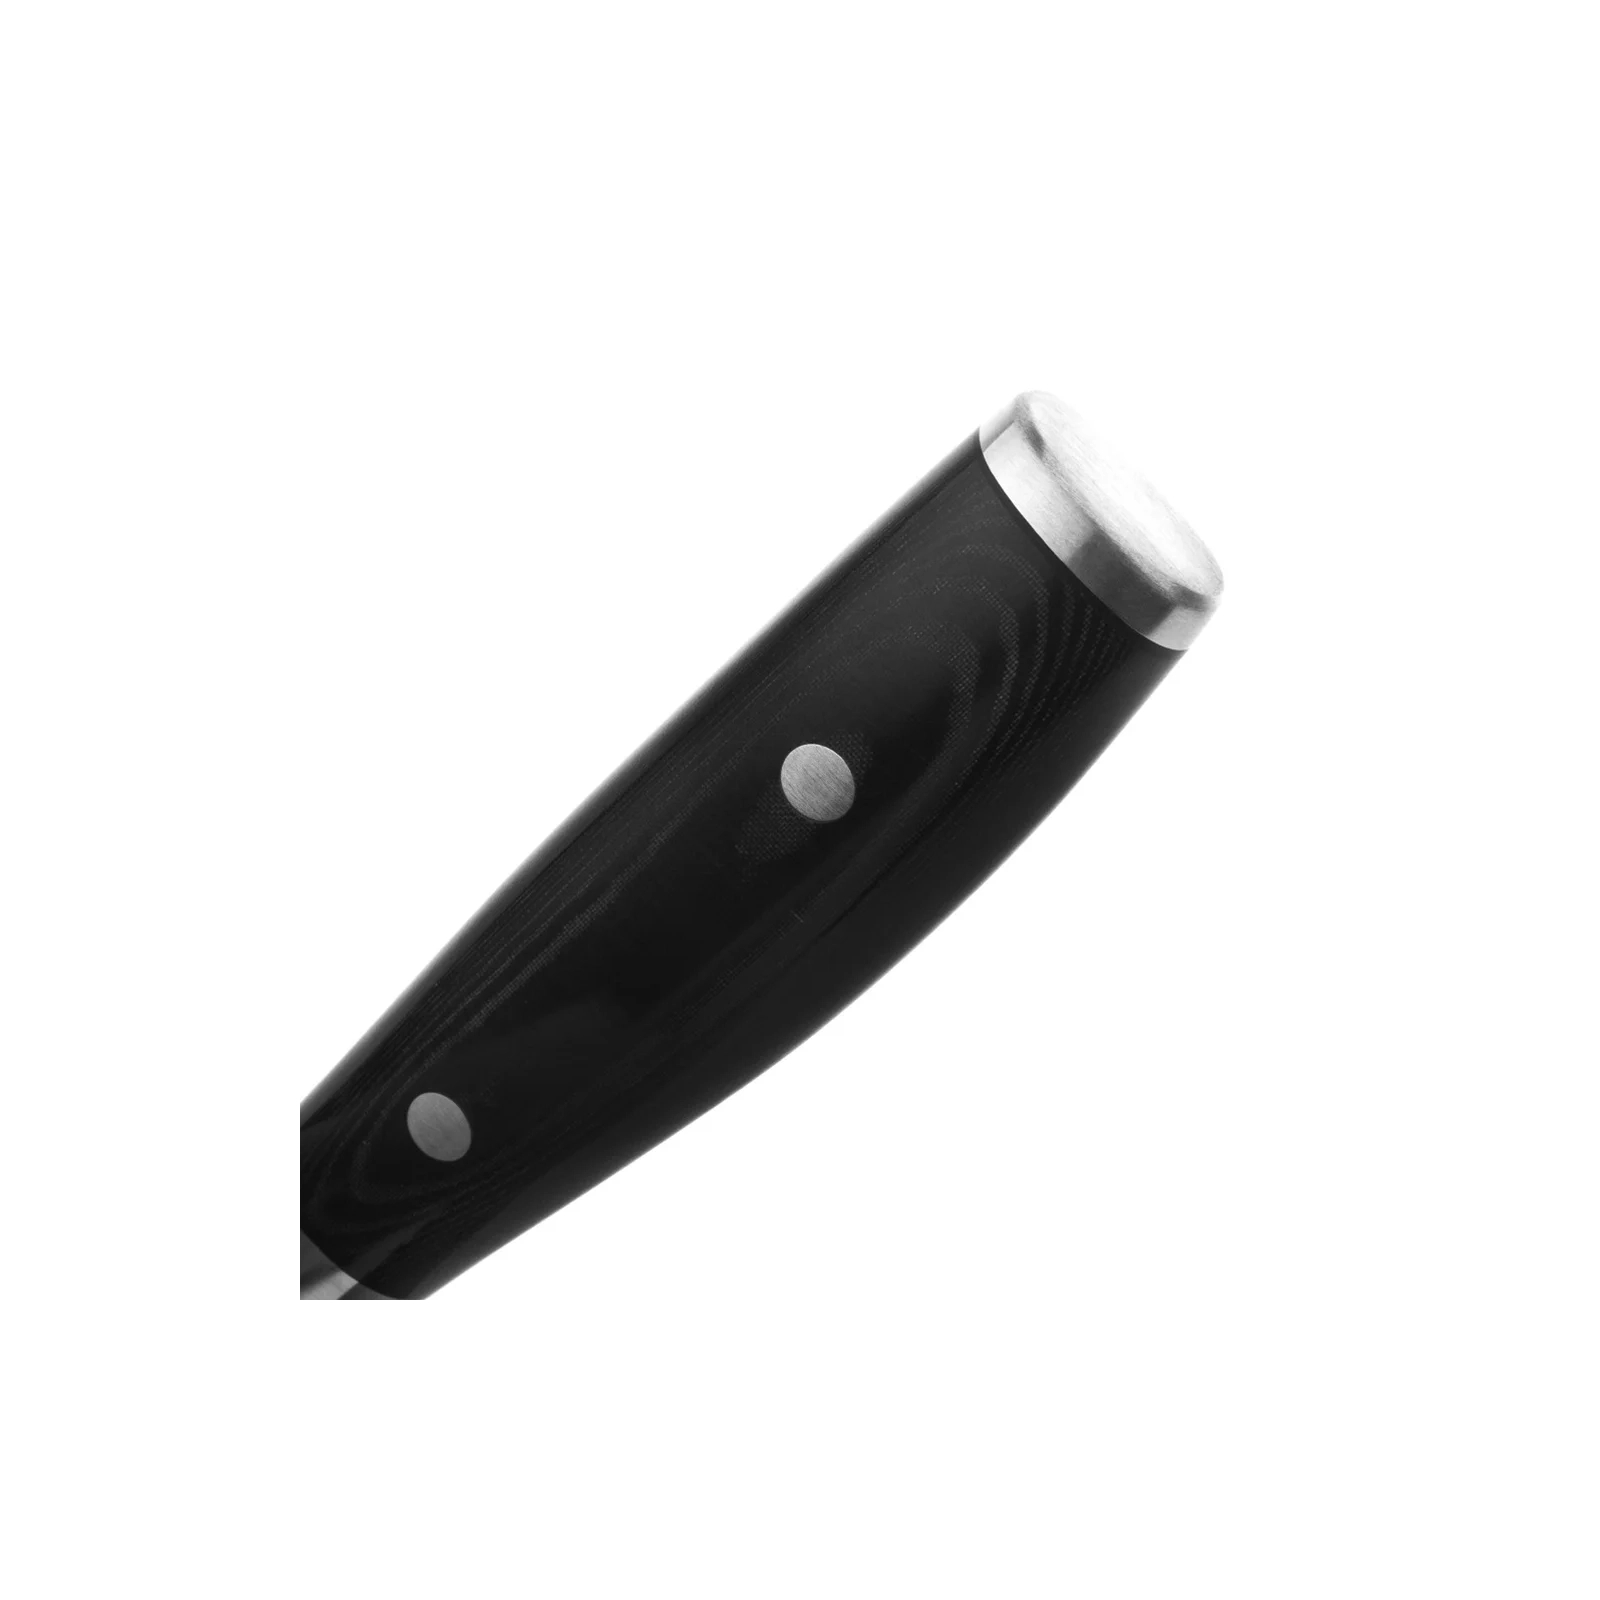 Кухонный нож Yaxell Кірітсуке 200 мм серія Ran (36034) изображение 4